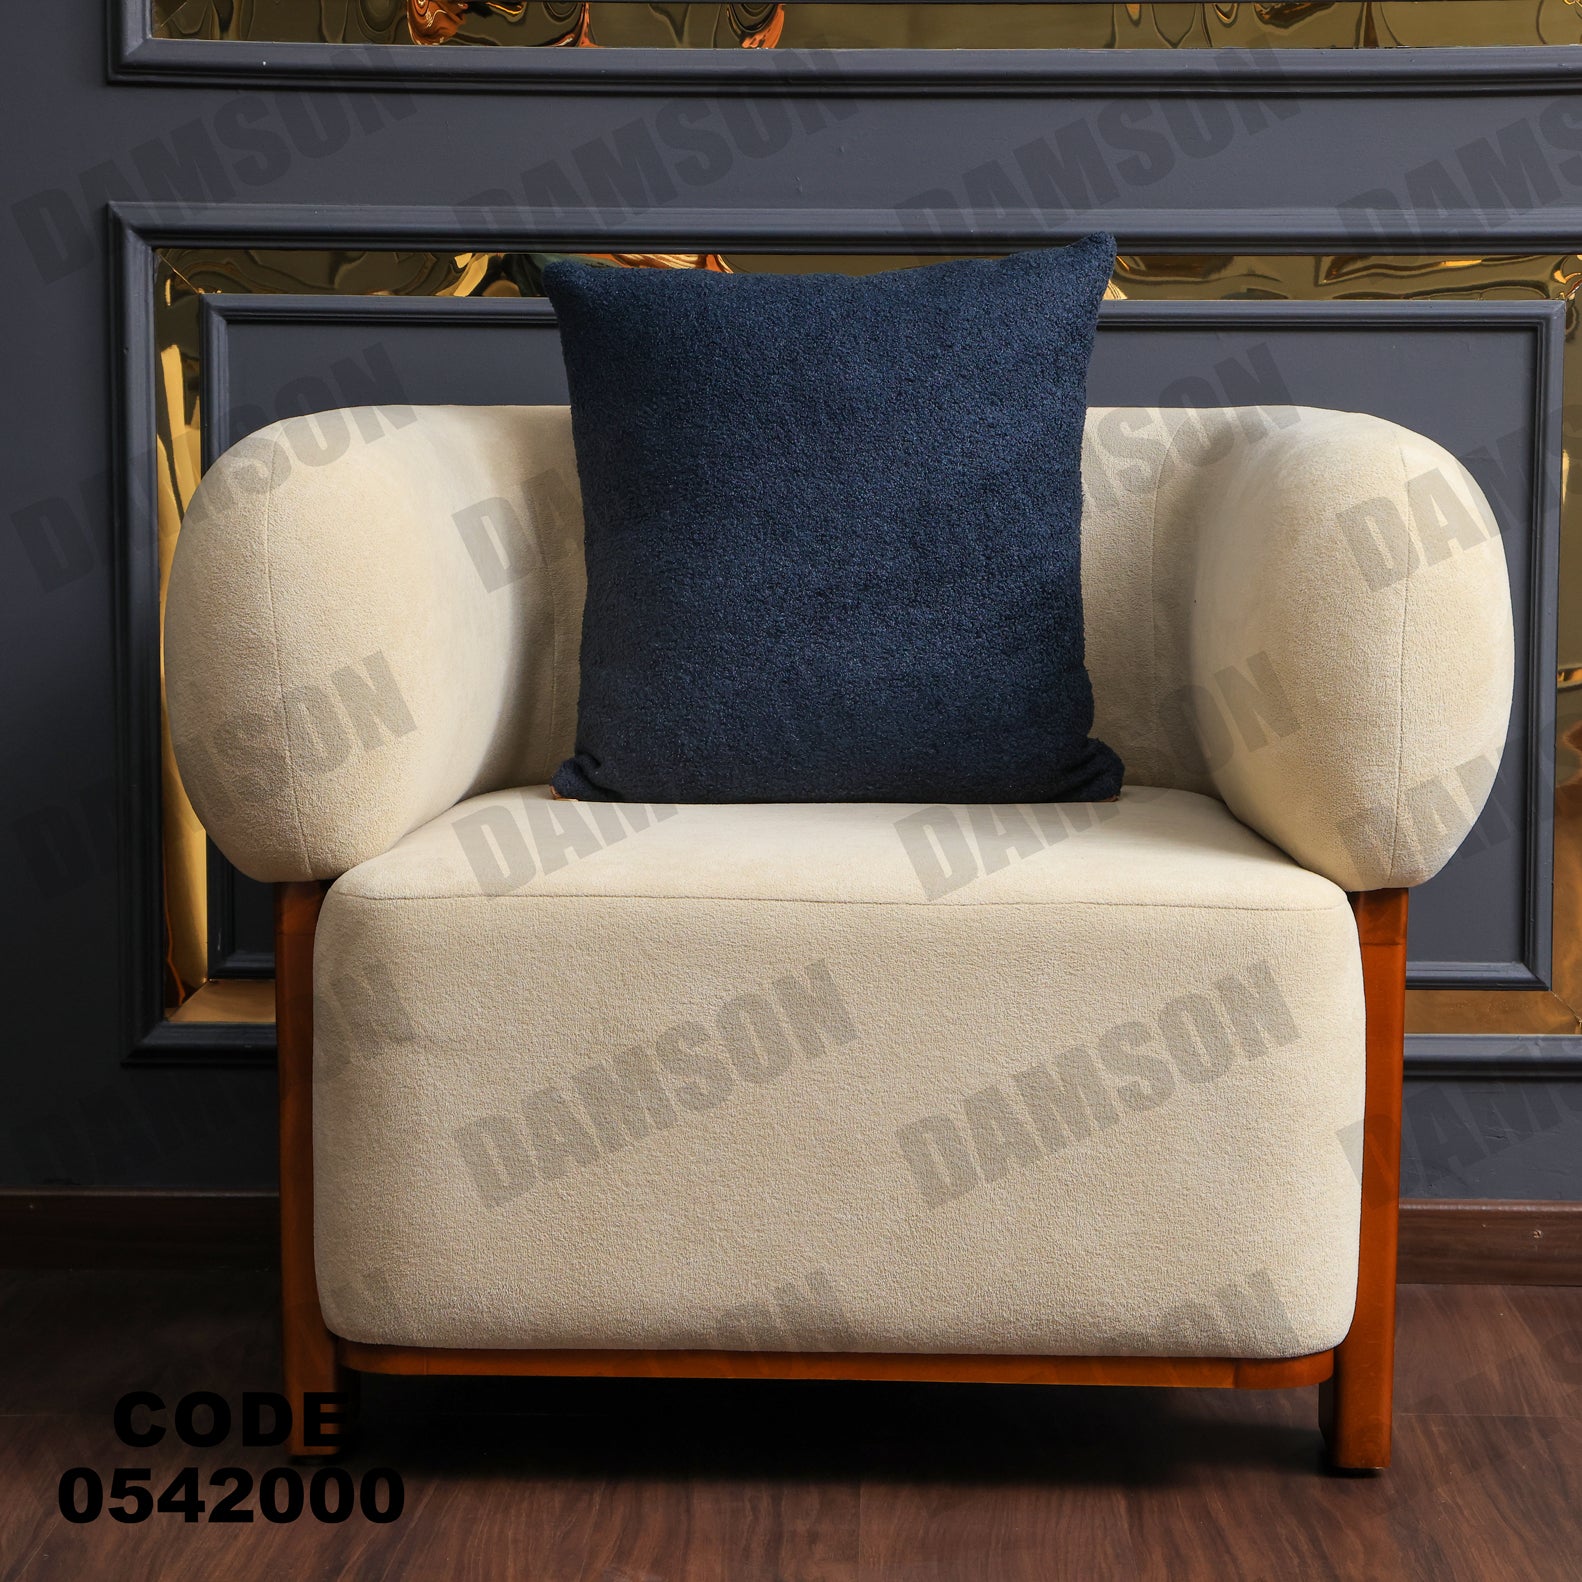 انترية 420 - Damson Furnitureانترية 420